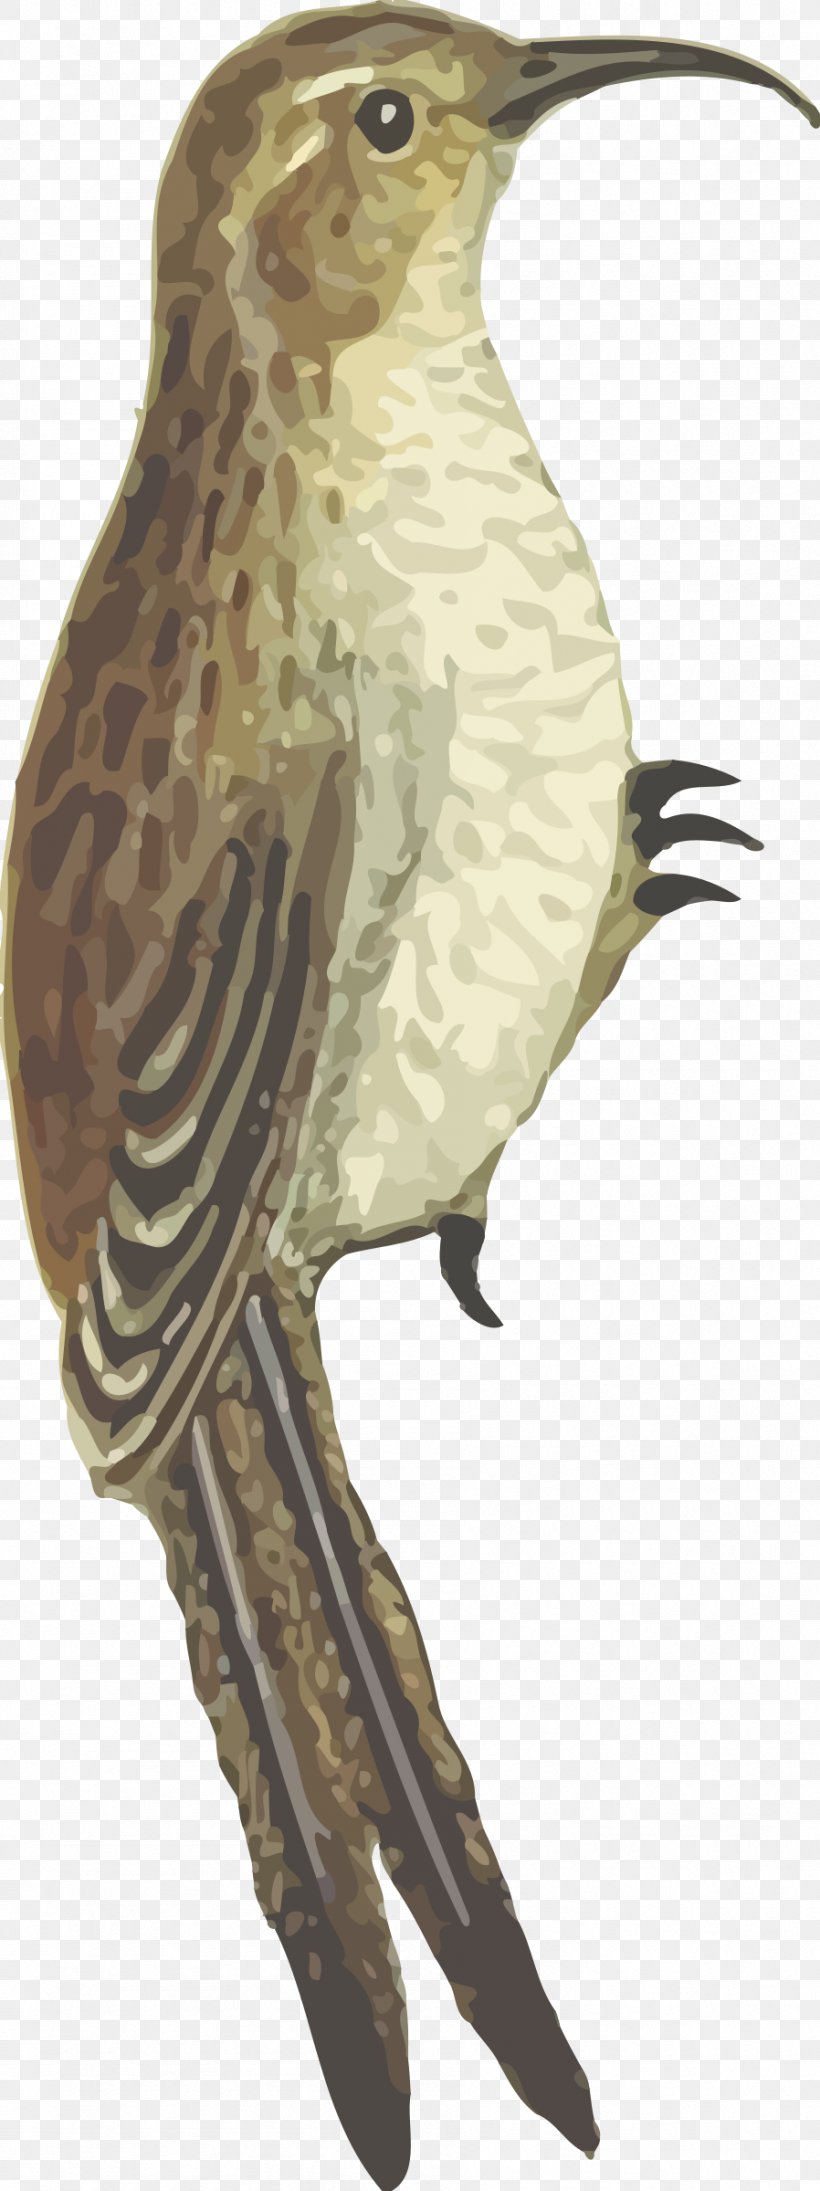 Bird Beak Clip Art Image, PNG, 898x2400px, Bird, Beak, Bird Flight, Bird Intelligence, Bird Nest Download Free